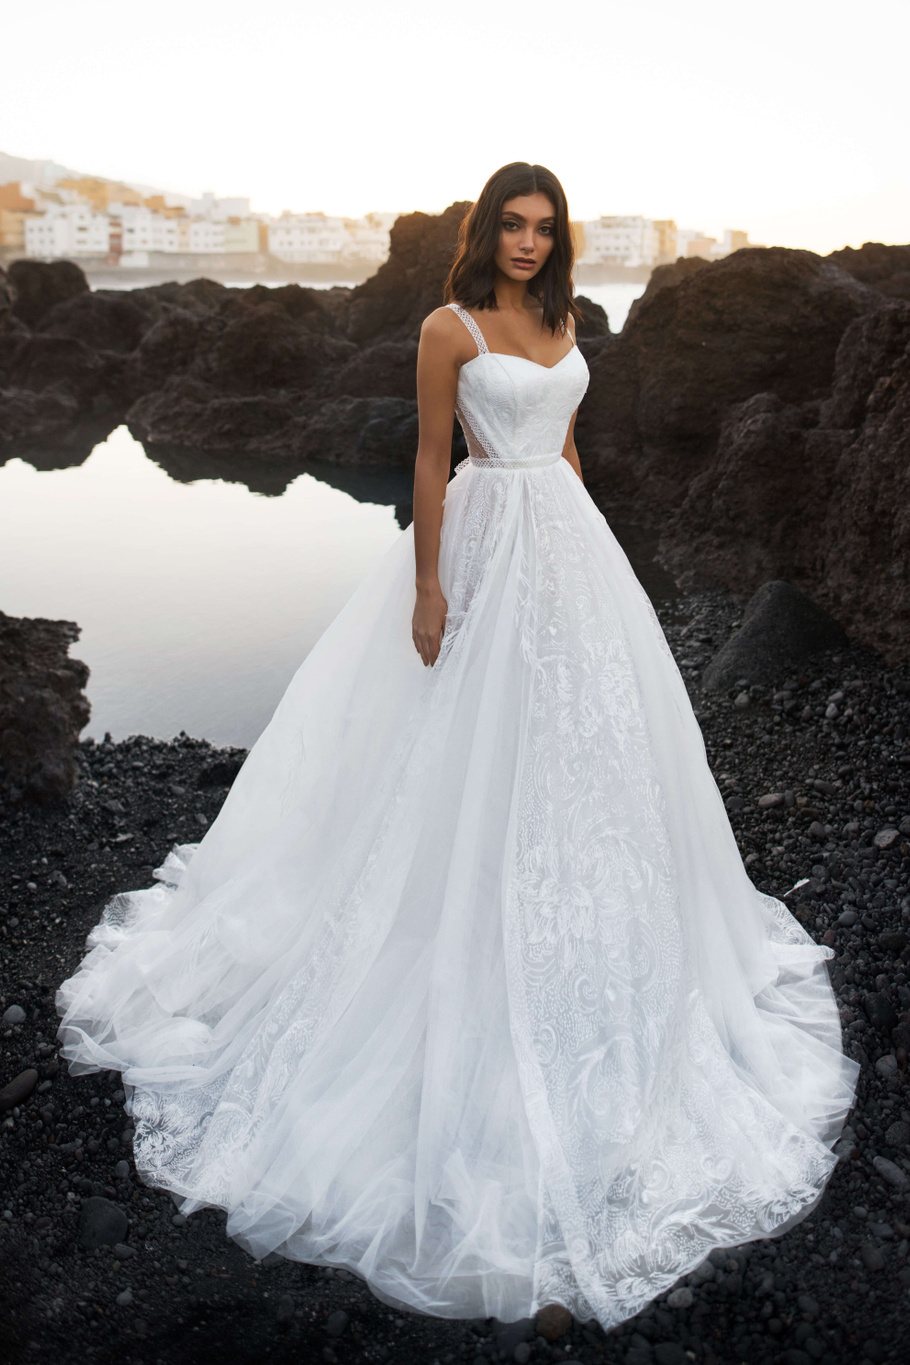 Купить свадебное платье «Сомали» Бламмо Биамо из коллекции 2019 года в Воронеже